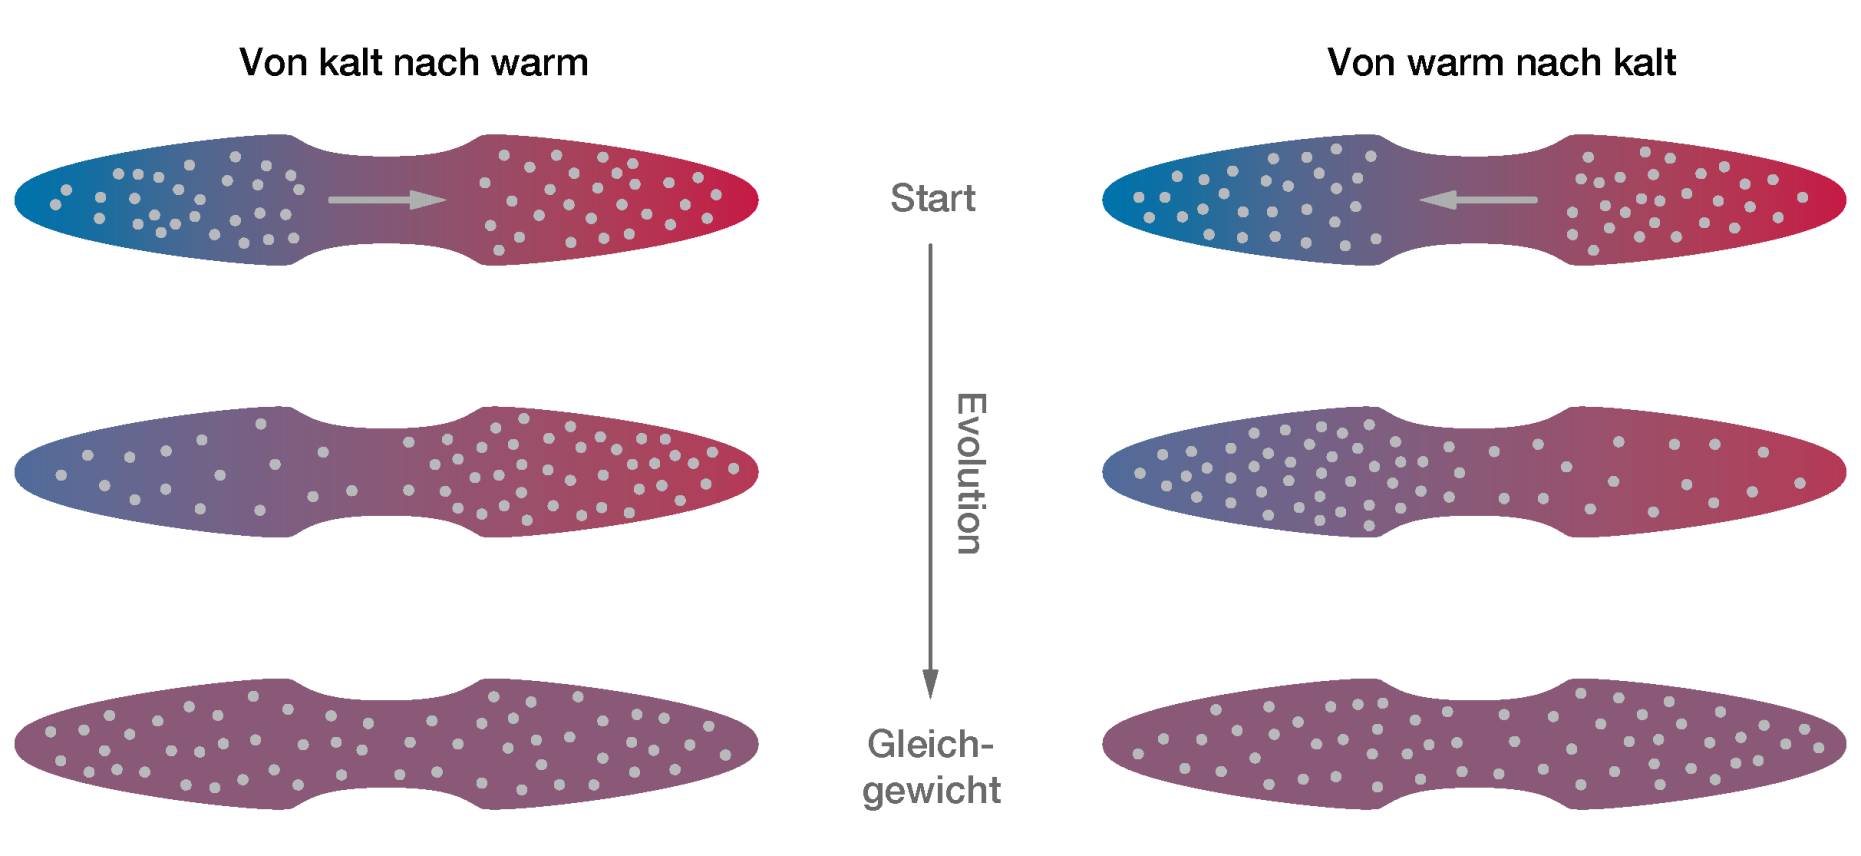 Schematische Darstellung der beiden Möglichkeiten, wie die Atome ausgehend von zwei Reservoirs unterschiedlicher Temperatur ein thermisches Gleichgewicht erreichen können.